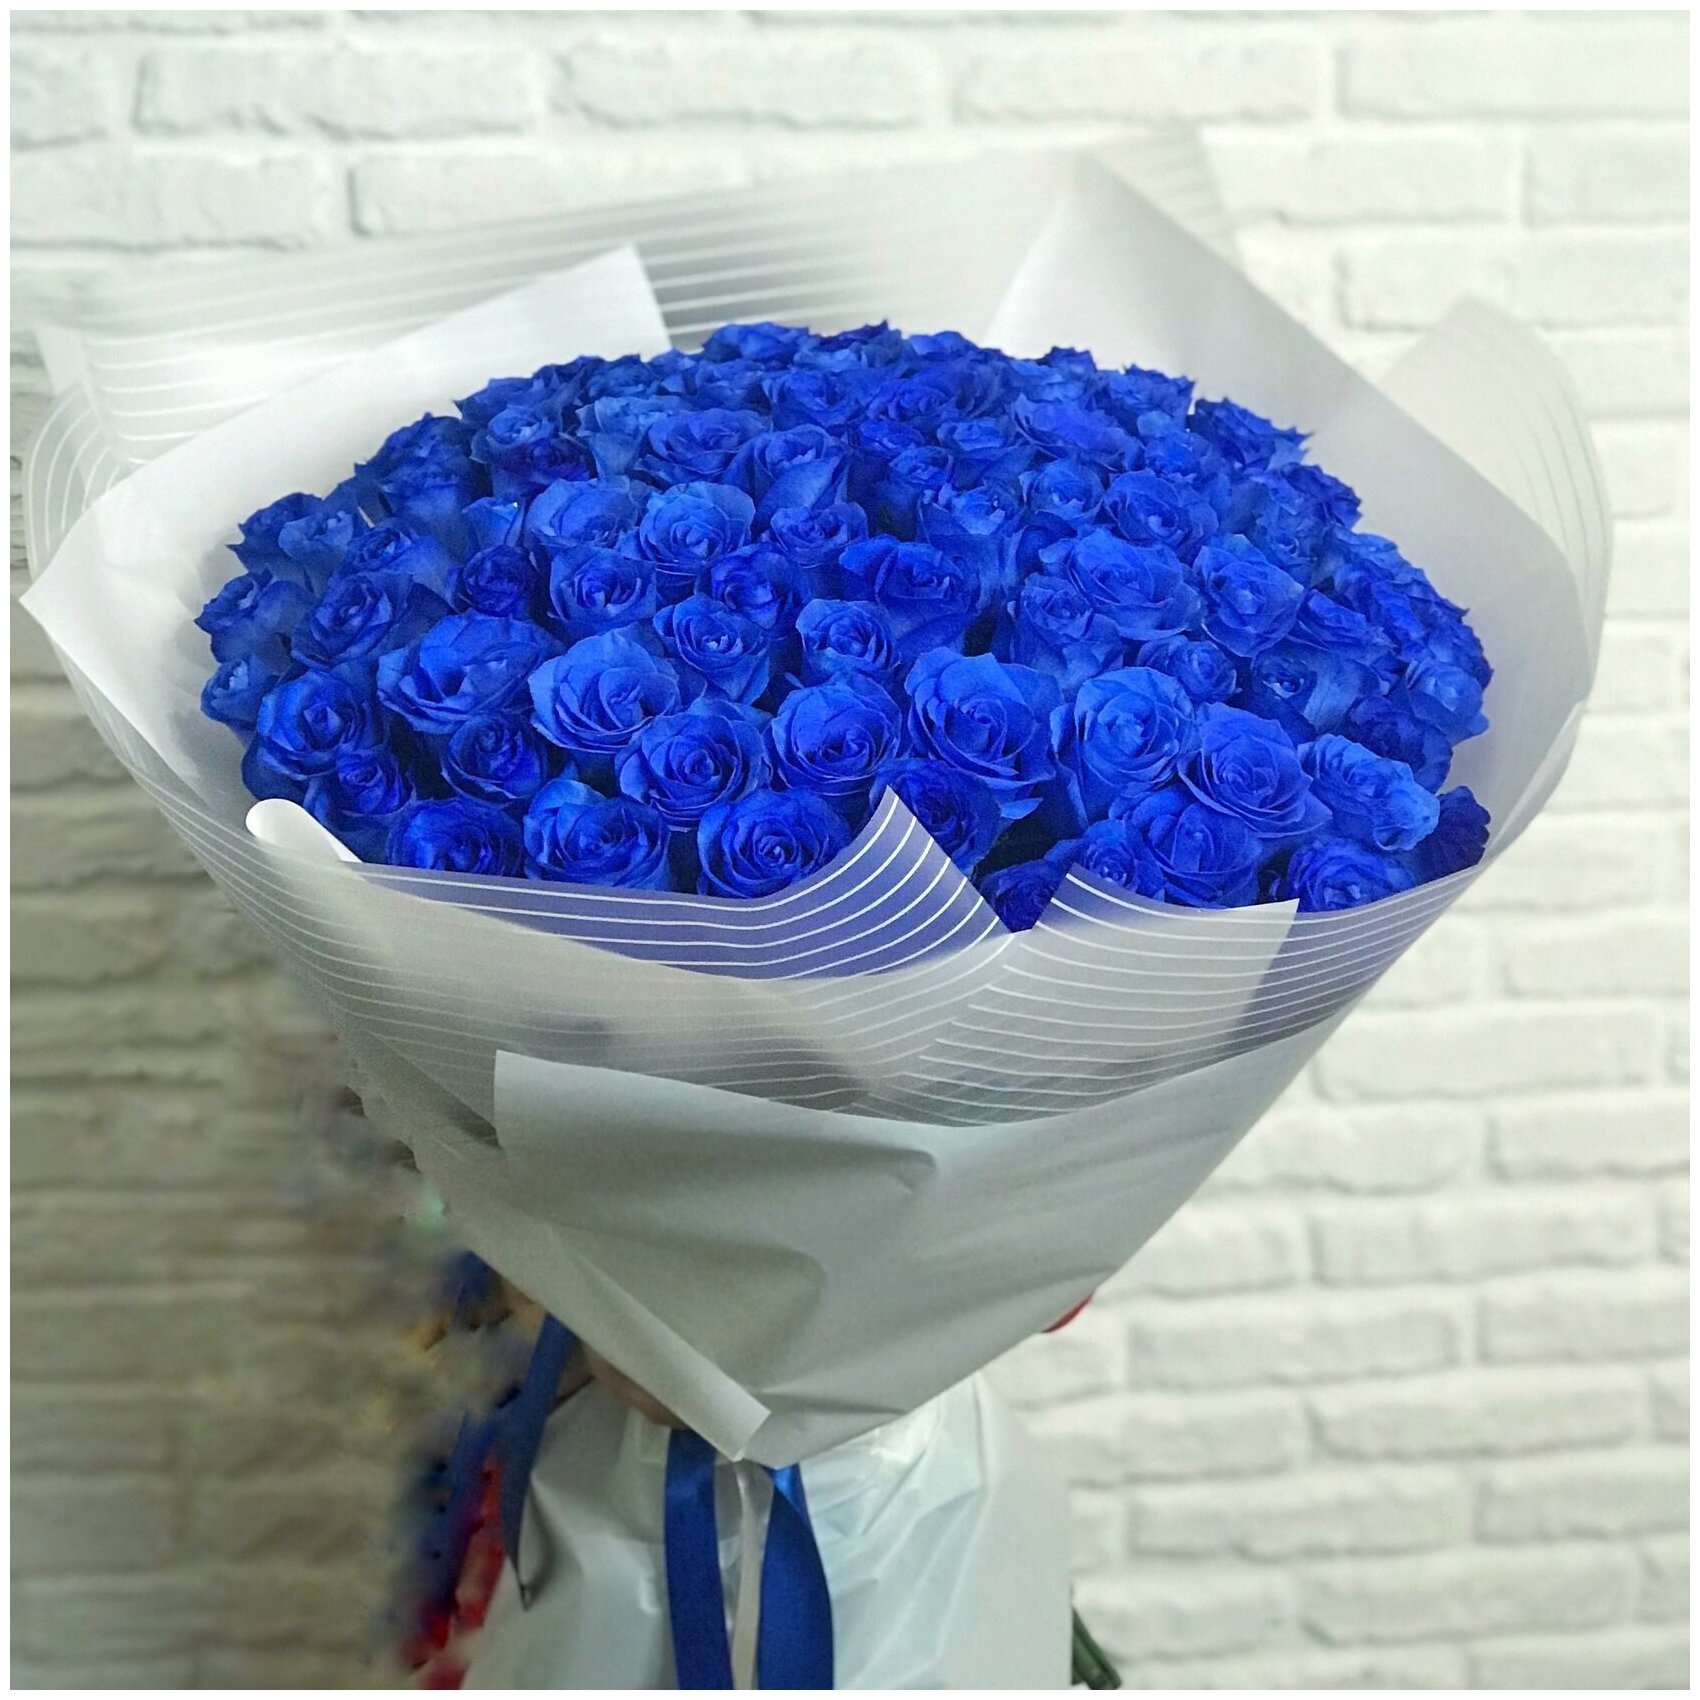 Букет живых синих роз 101 шт, красивый букет цветов, шикарный, премиум букет.